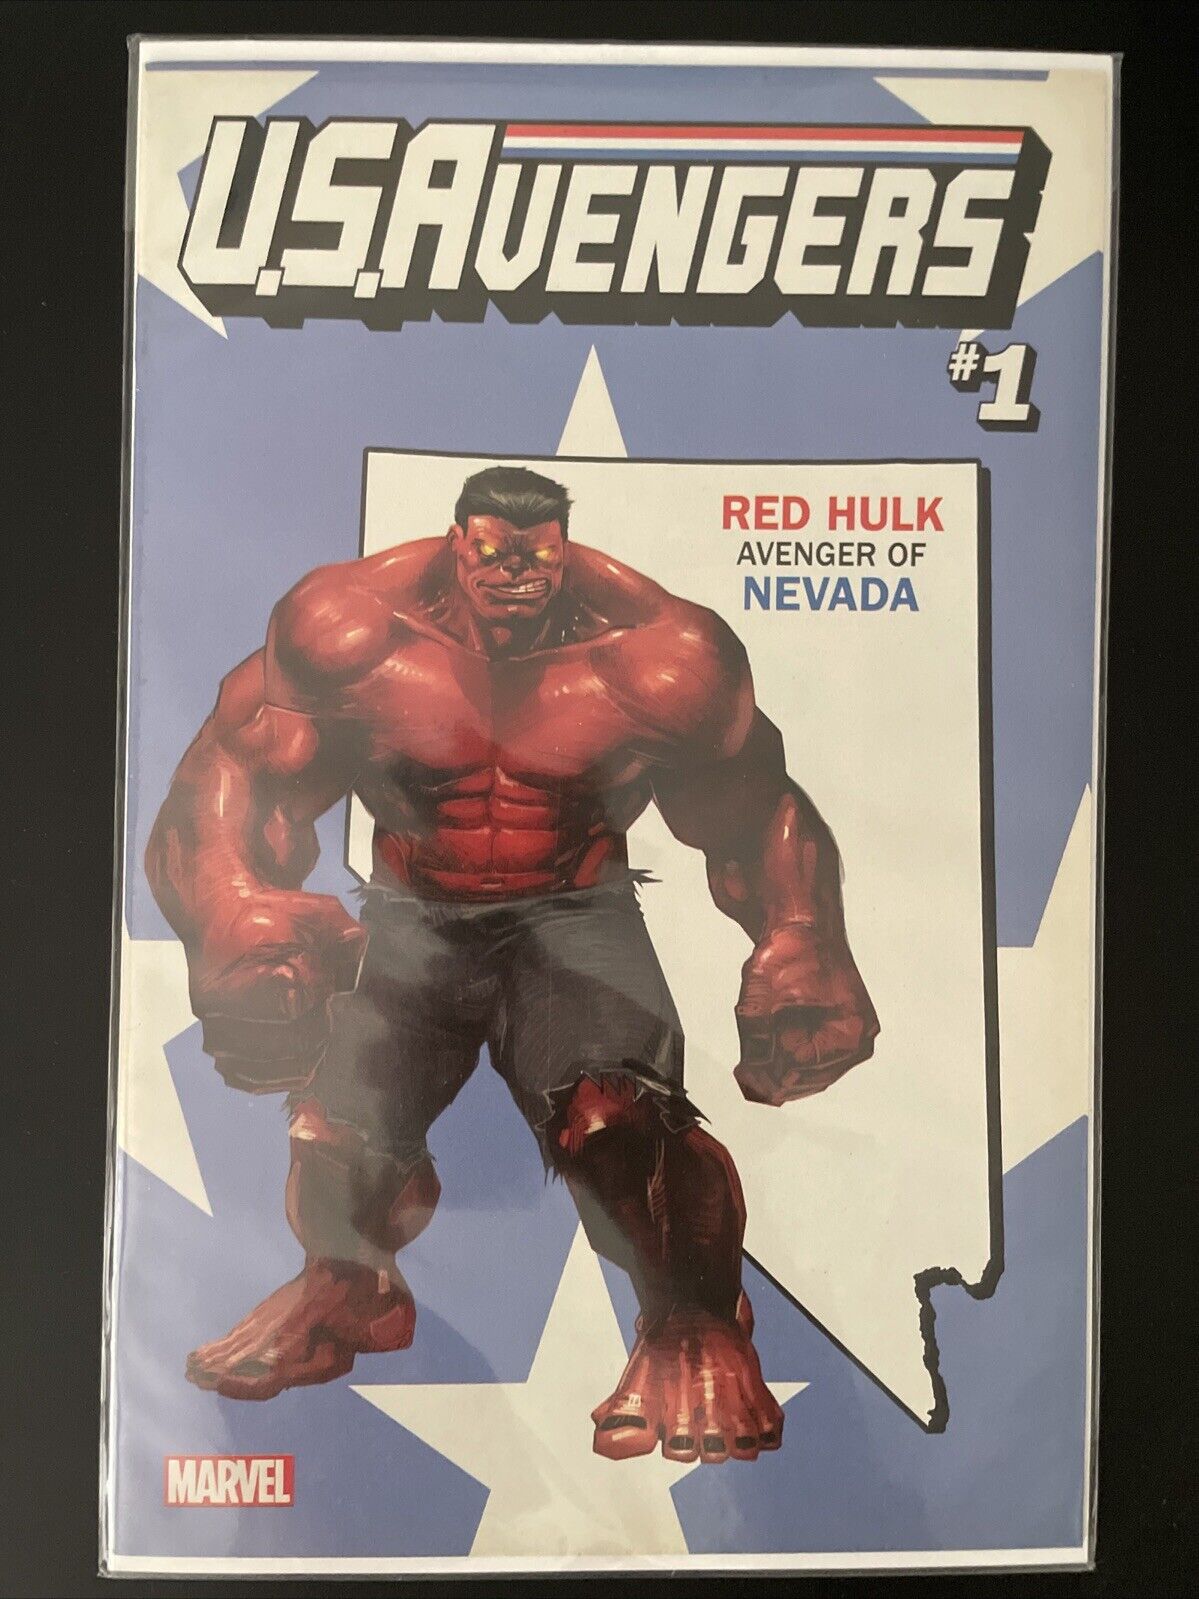 Marvel Comics U.S. AVENGERS #1 (Marvel) Red Hulk Nevada Variant Cover